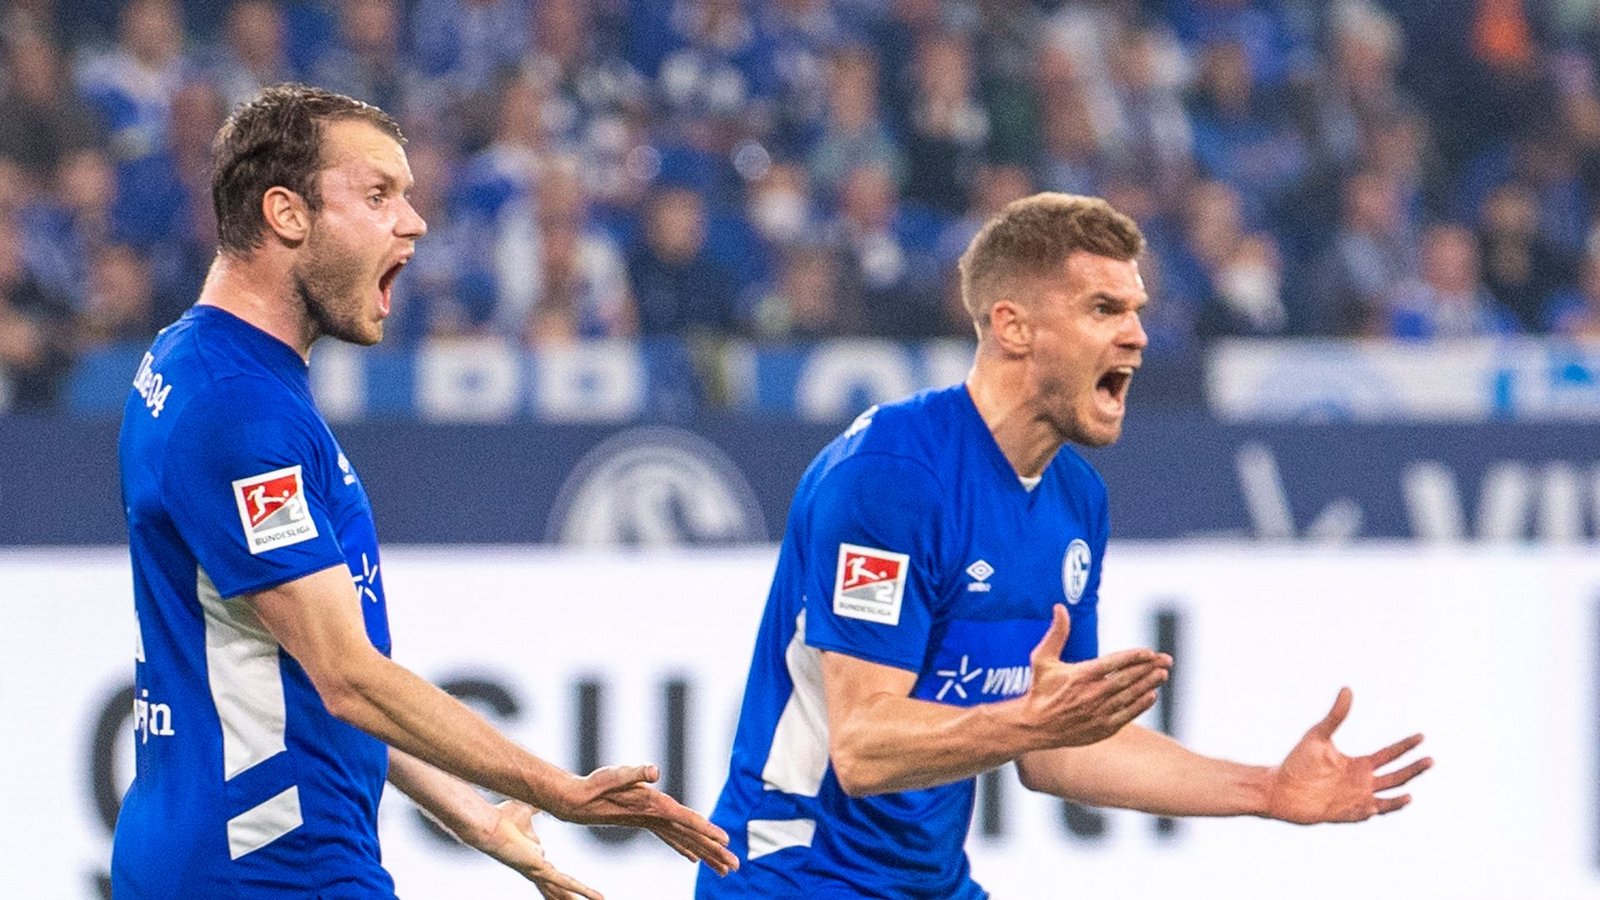 Der FC Schalke 04 spielt in der nächsten Saison wieder in der Bundesliga.Foto: David Inderlied/dpa